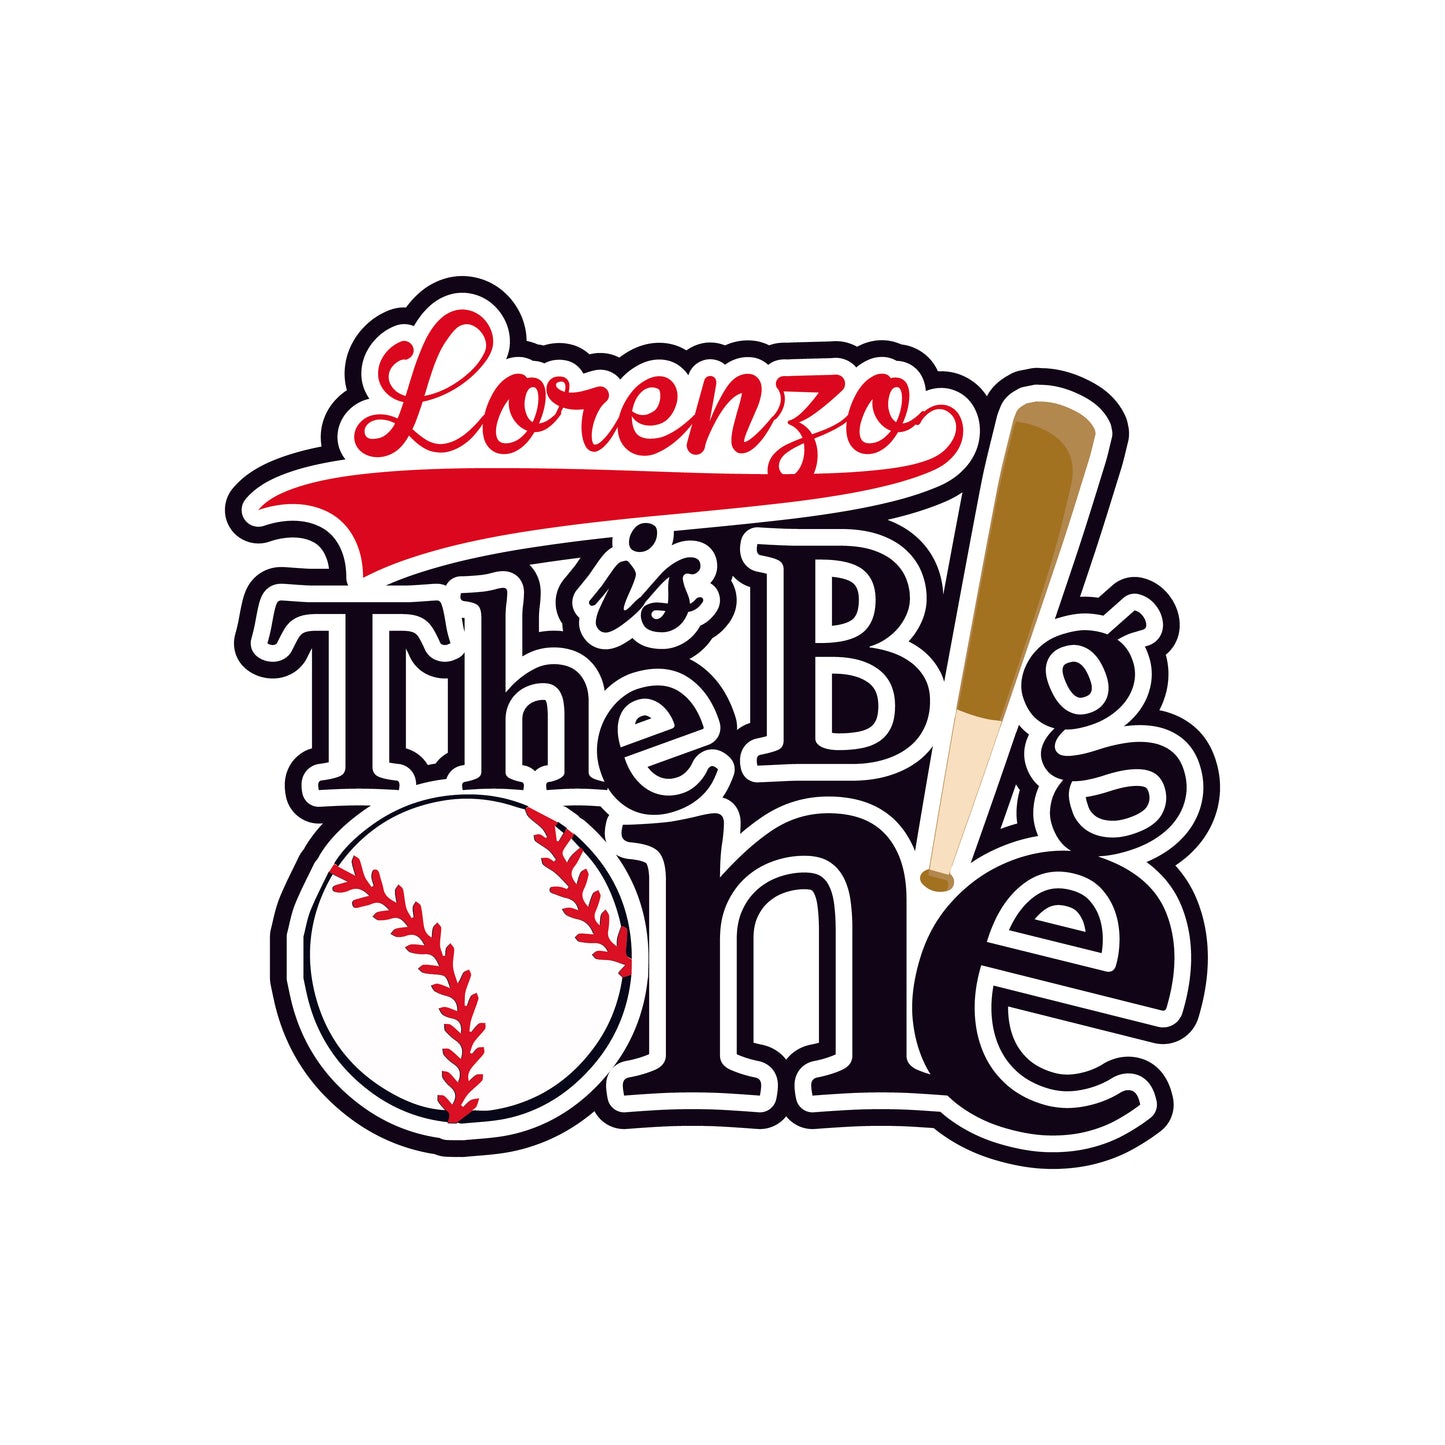 The Big One Baseball Cake Topper - Black